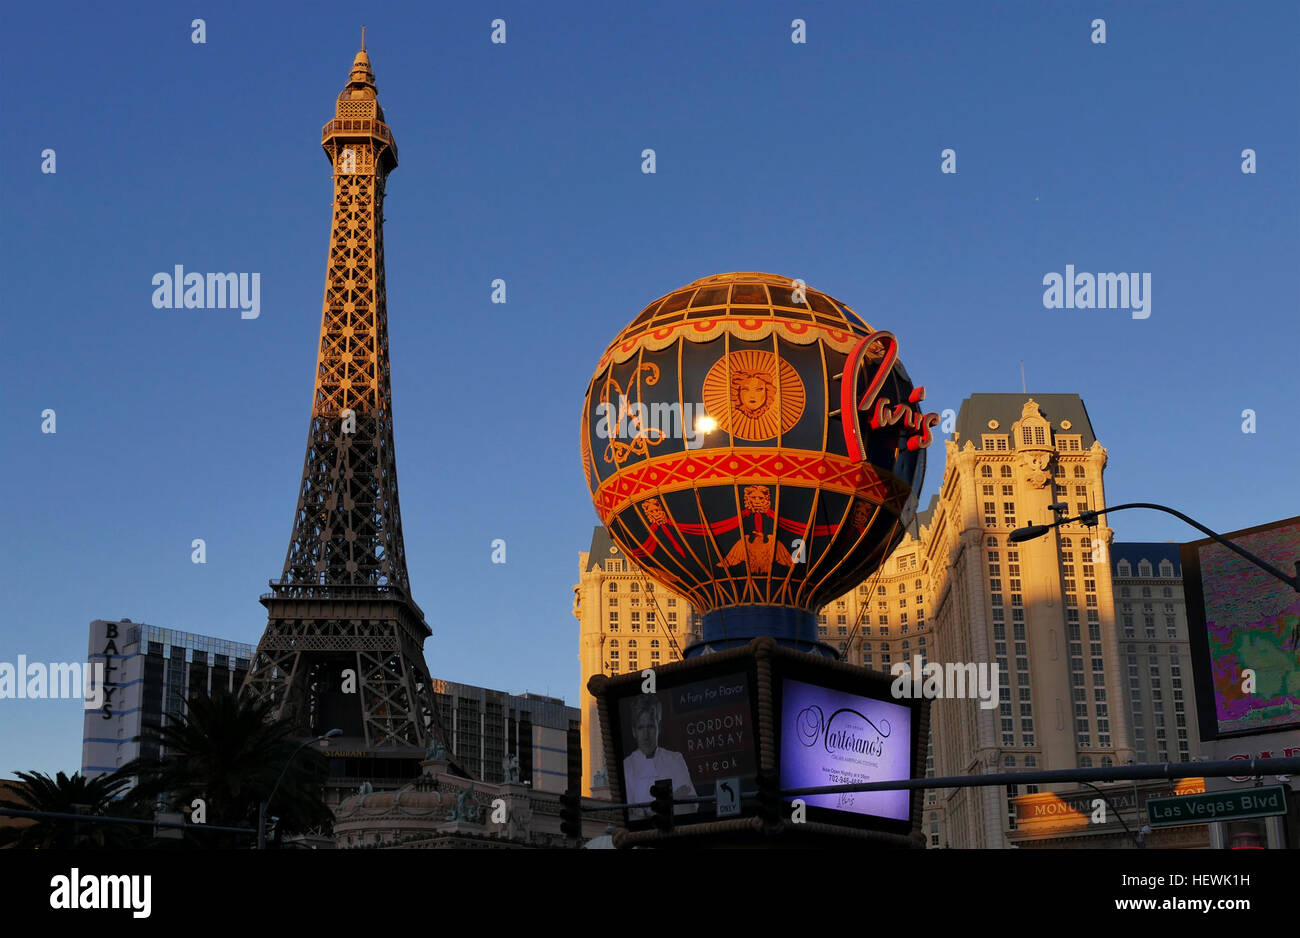 Cet hôtel casino à thème français avec une demi-taille Tour Eiffel est sur toute la bande du Bellagio et à 9 minutes à pied de la station de monorail de Las Vegas. Banque D'Images